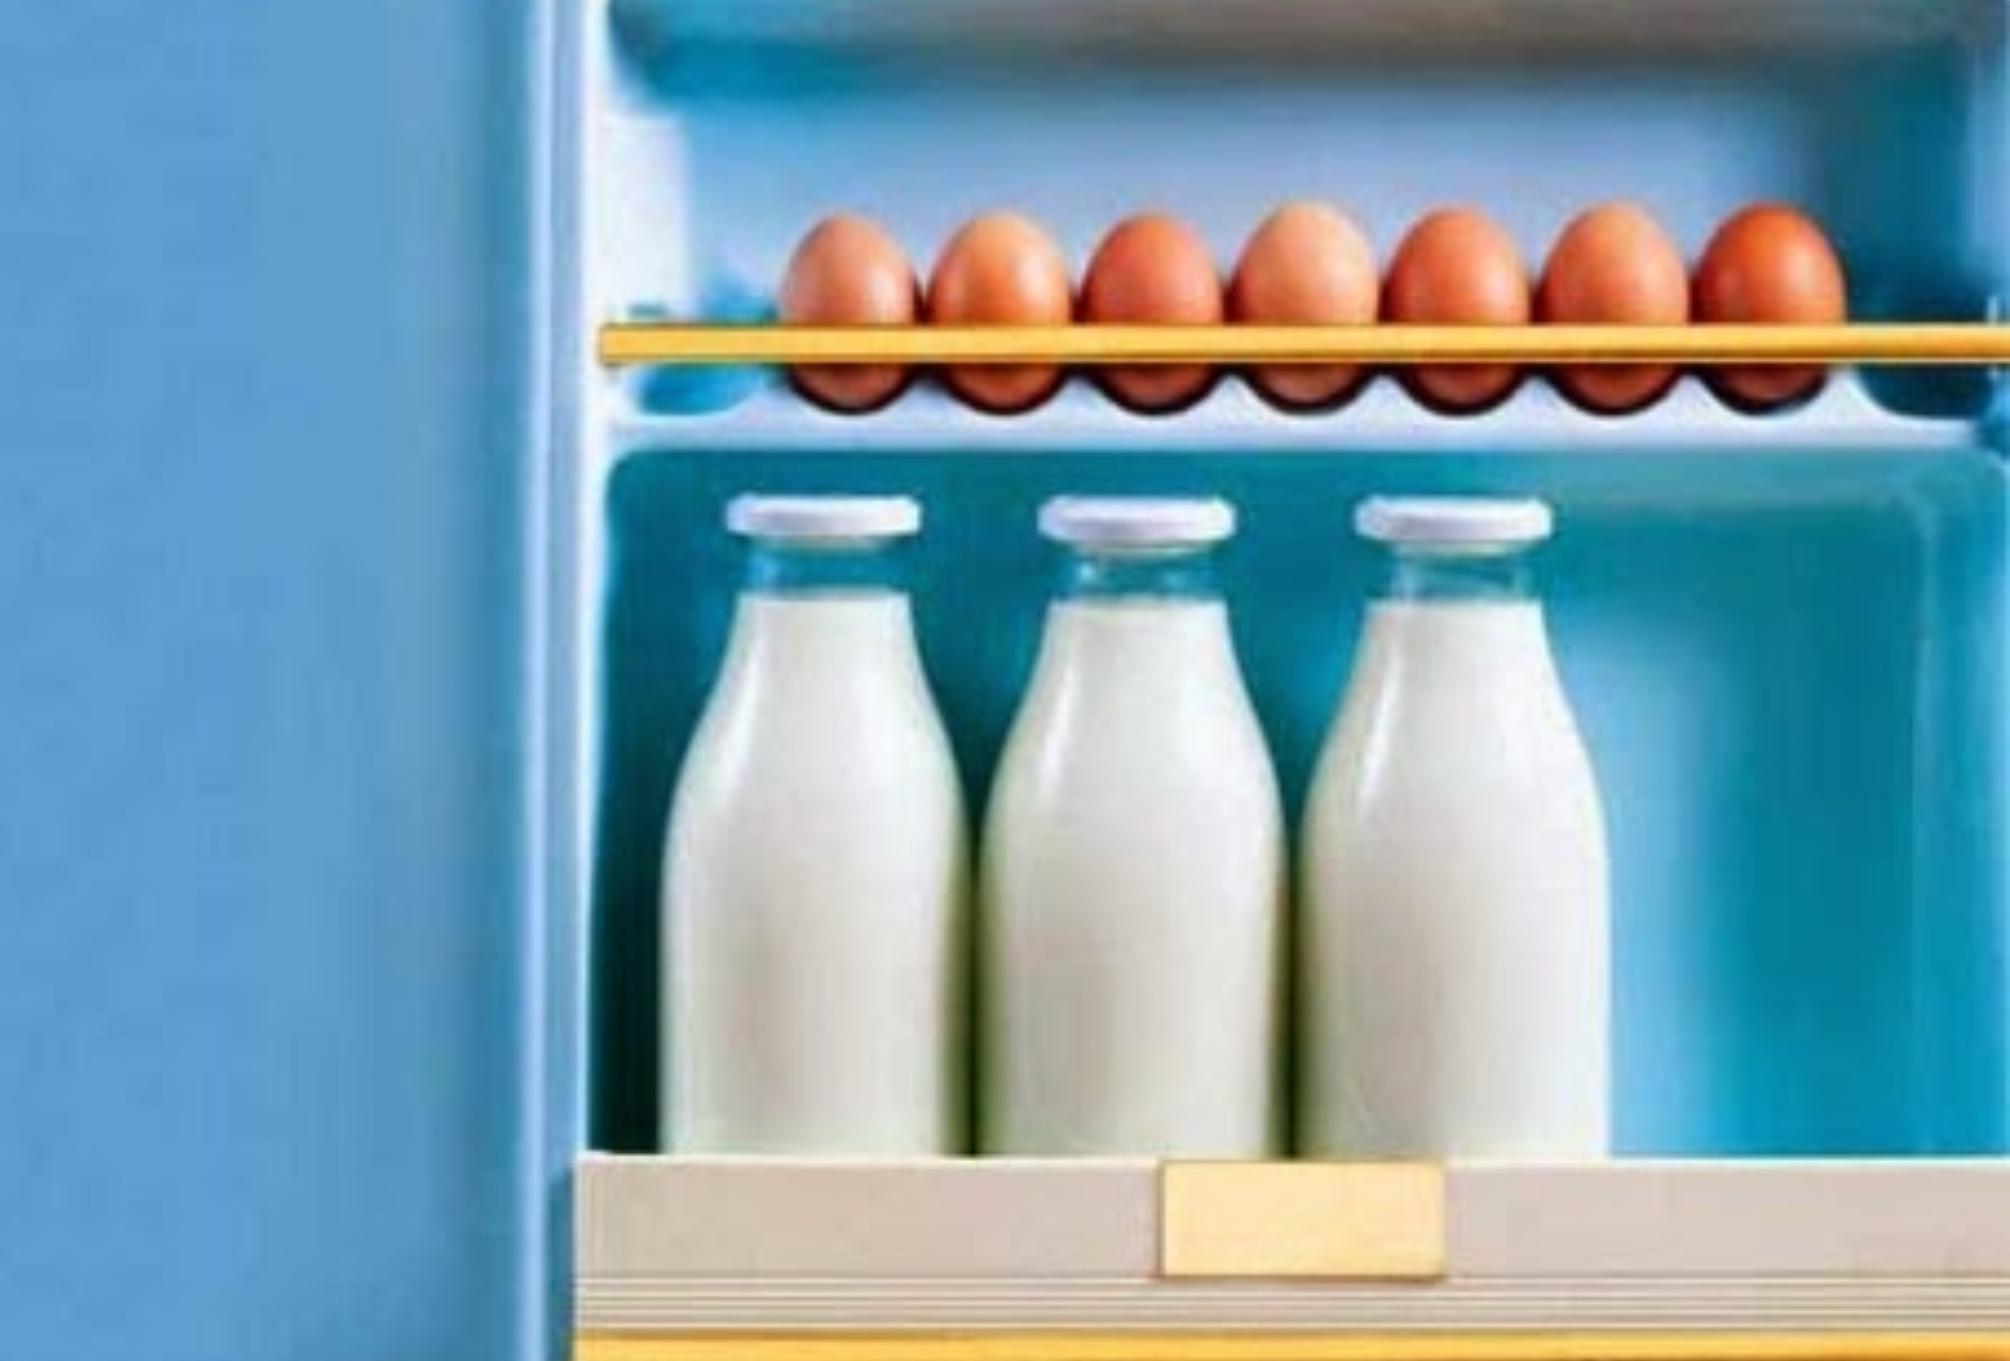 Καμπανάκι από τον ΕΦΕΤ: Προσοχή με το γάλα και τα αυγά στο ψυγείο την περίοδο του καύσωνα